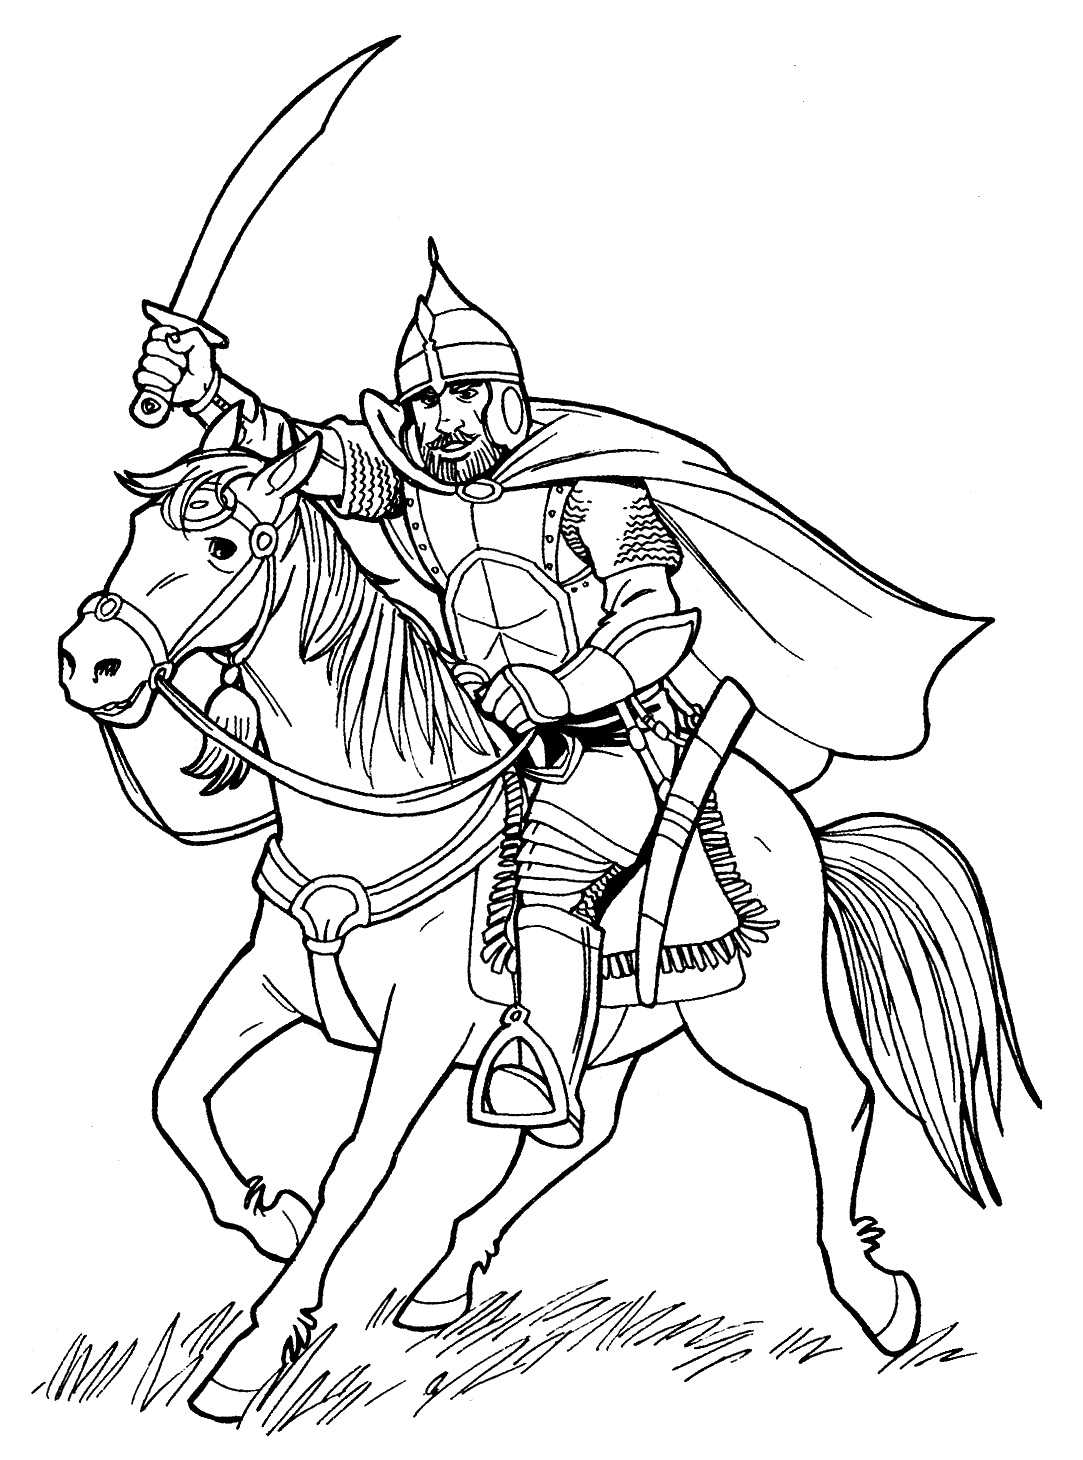 Древнерусский воин раскраска